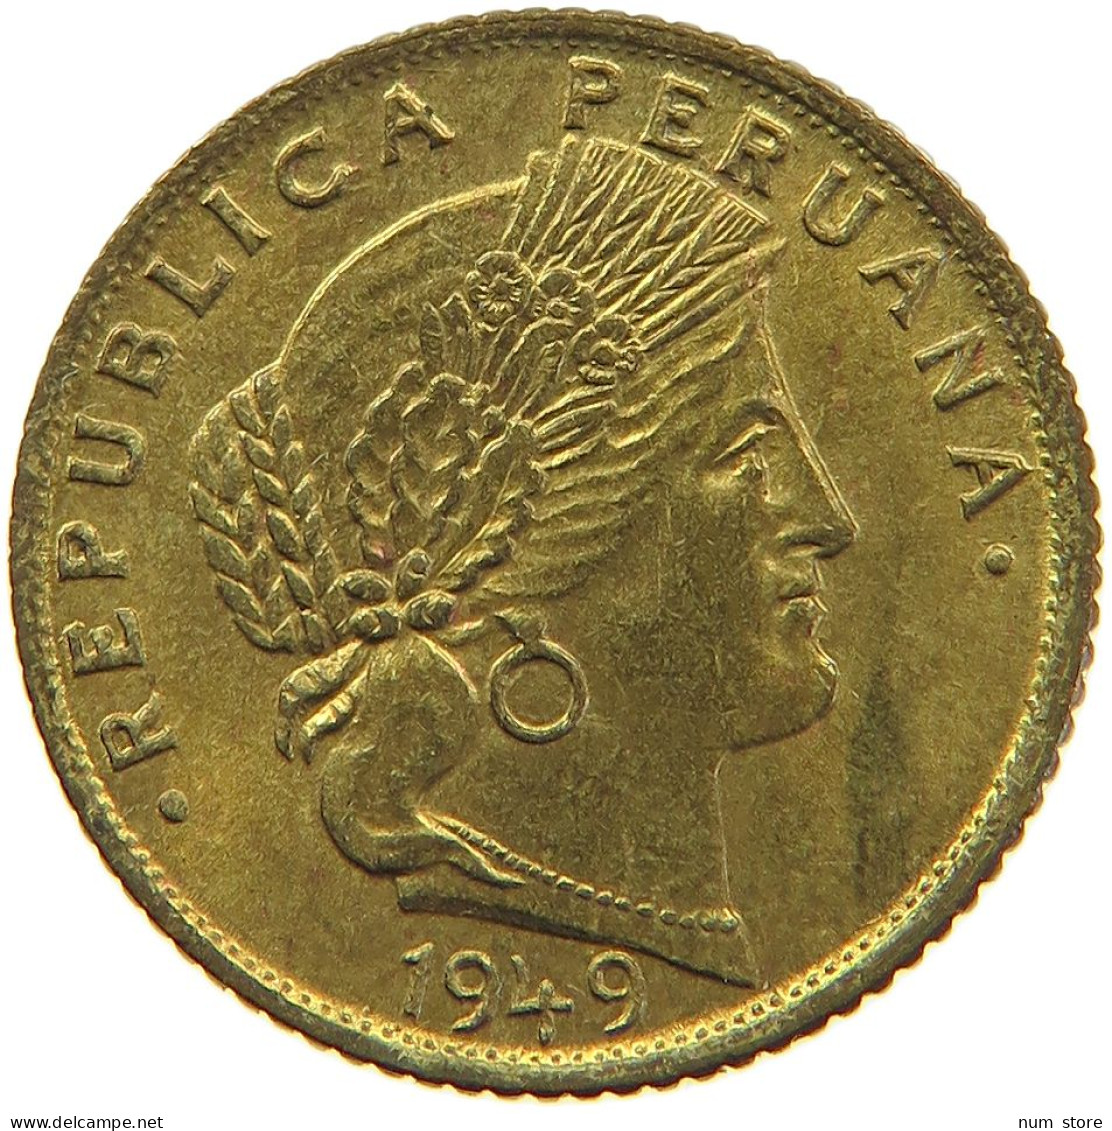 PERU 5 CENTAVOS 1949 UNC #t030 0159 - Peru